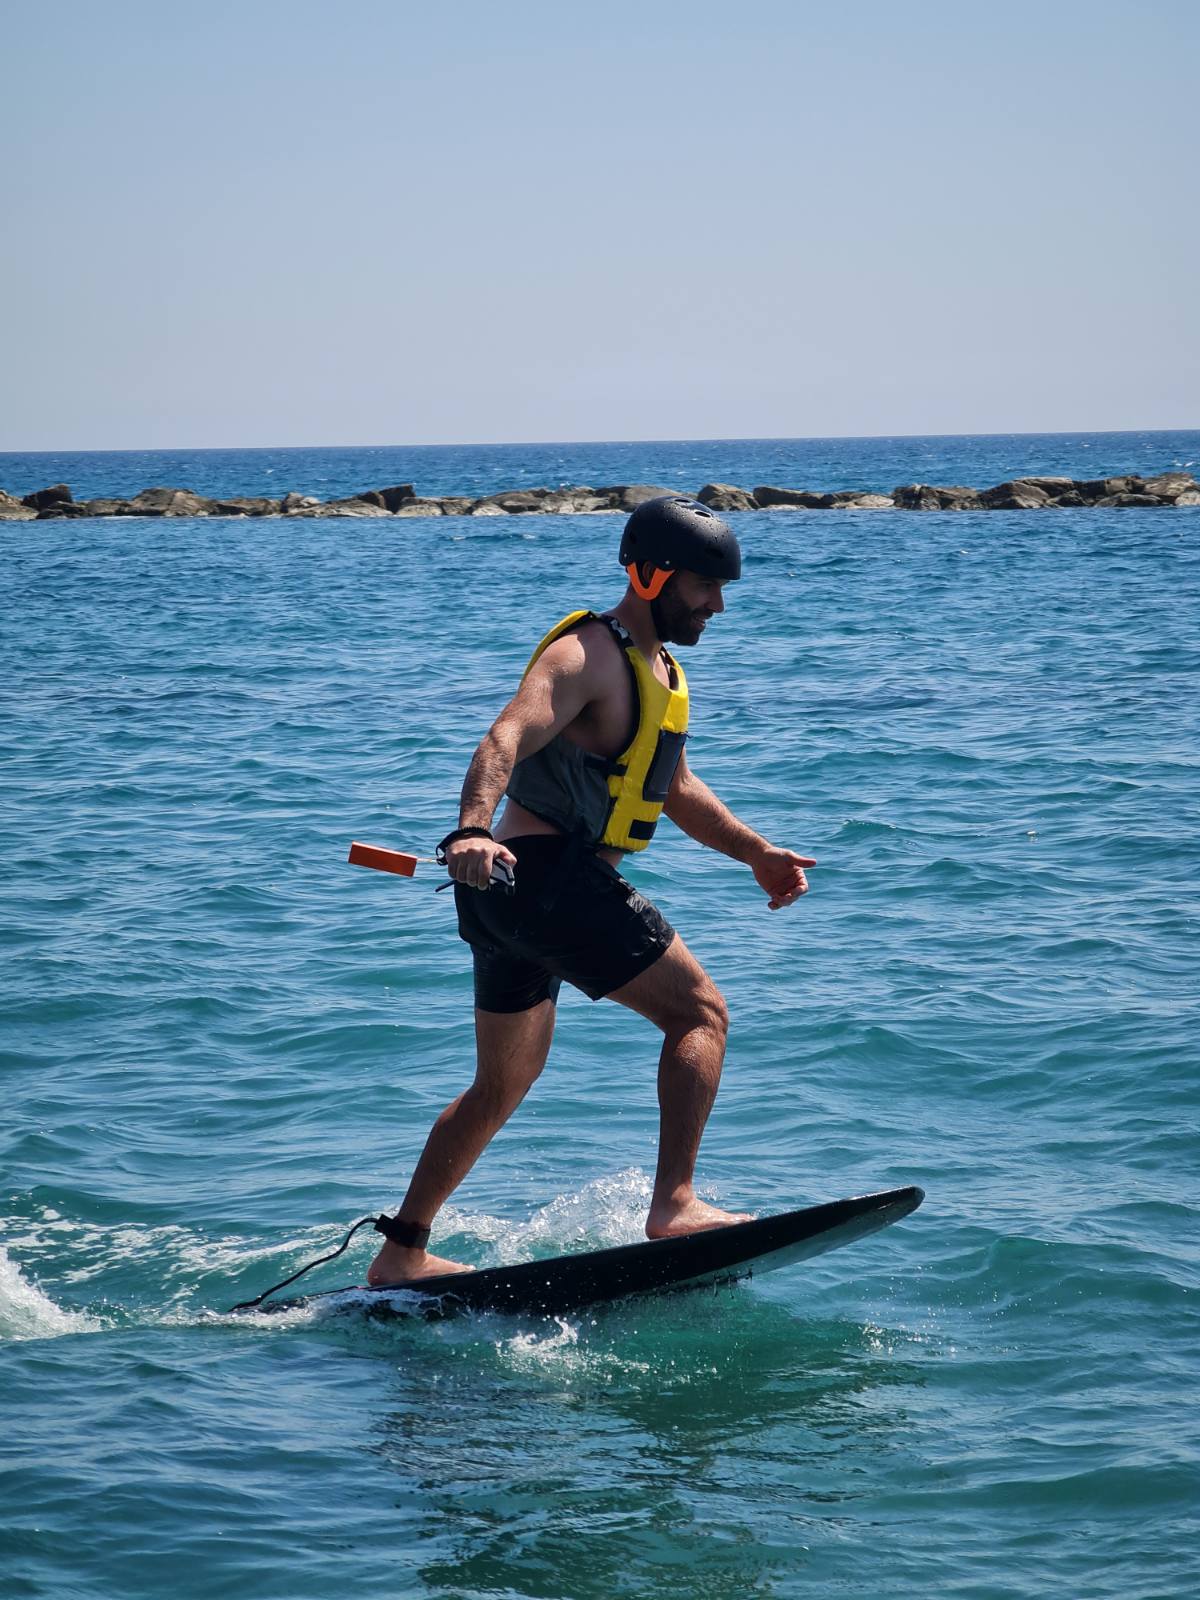 BIOZEUS FULL CARBON FIBRE EFOIL SURFBOARD ELECTRIC HYDROFOIL SURF BOARD - Biozeus fitness 